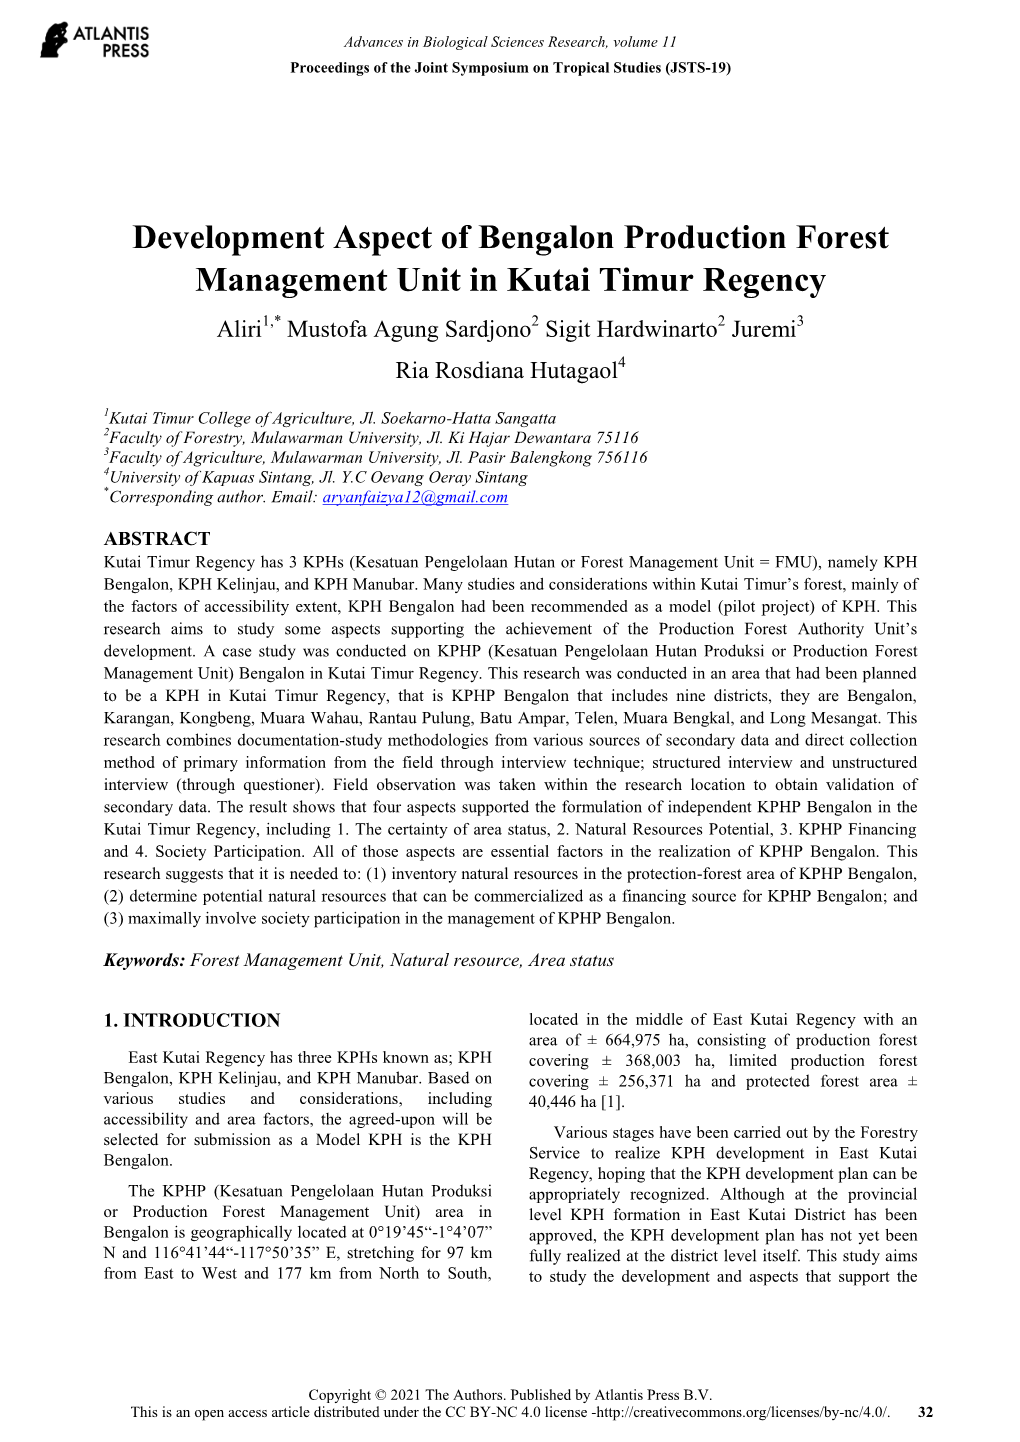 Development Aspect of Bengalon Production Forest Management